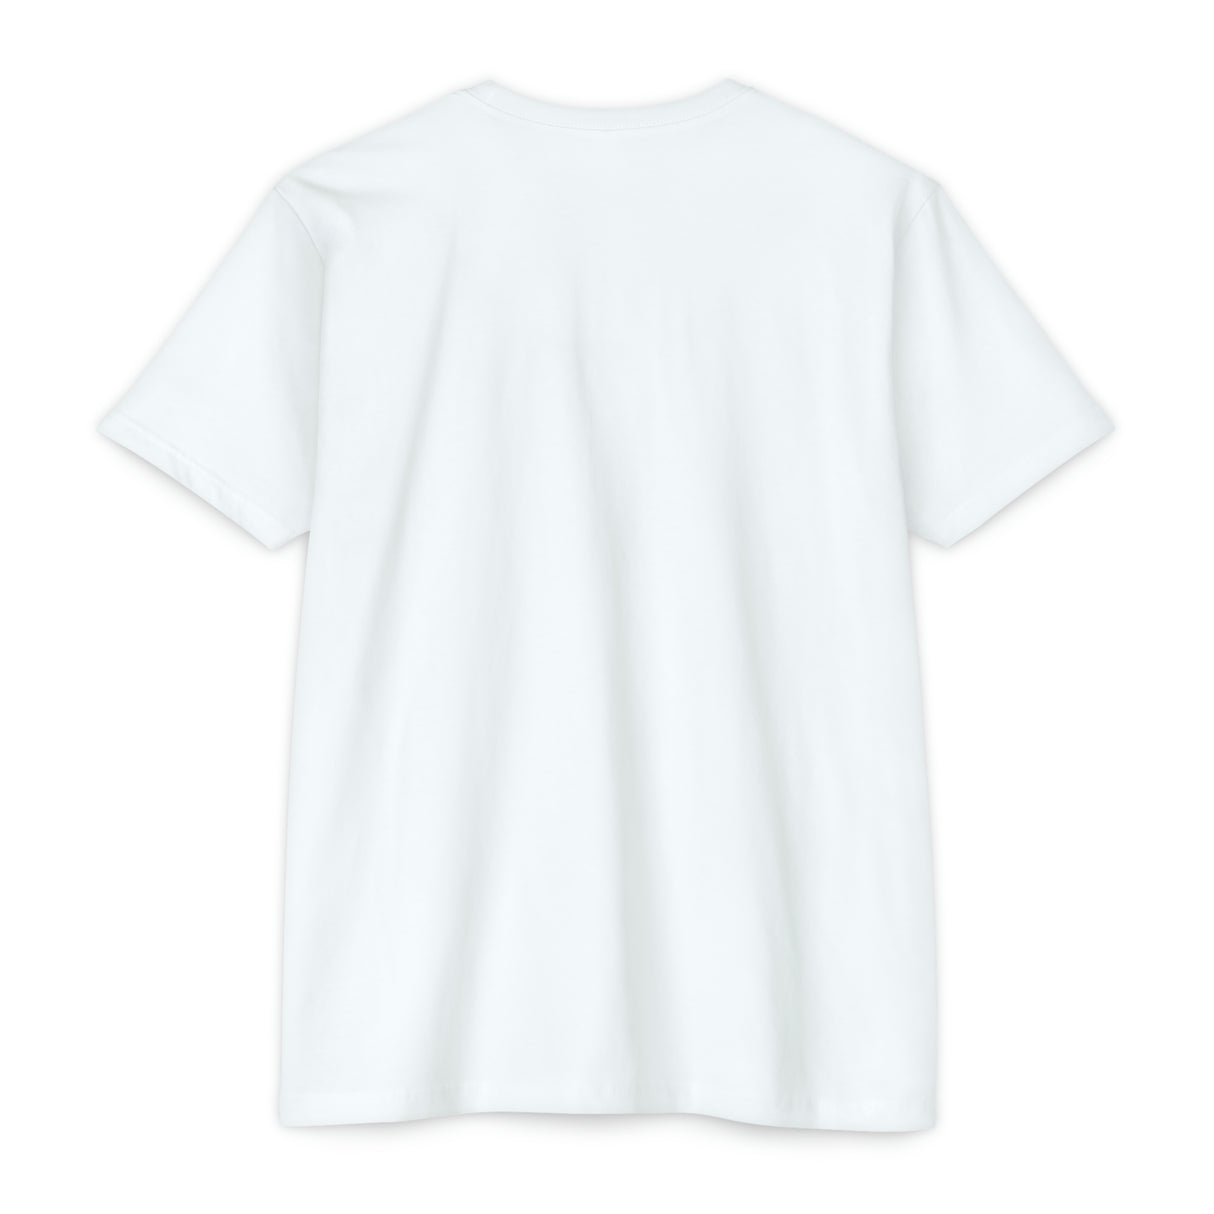 Chalklife - T-shirt (Unisex)